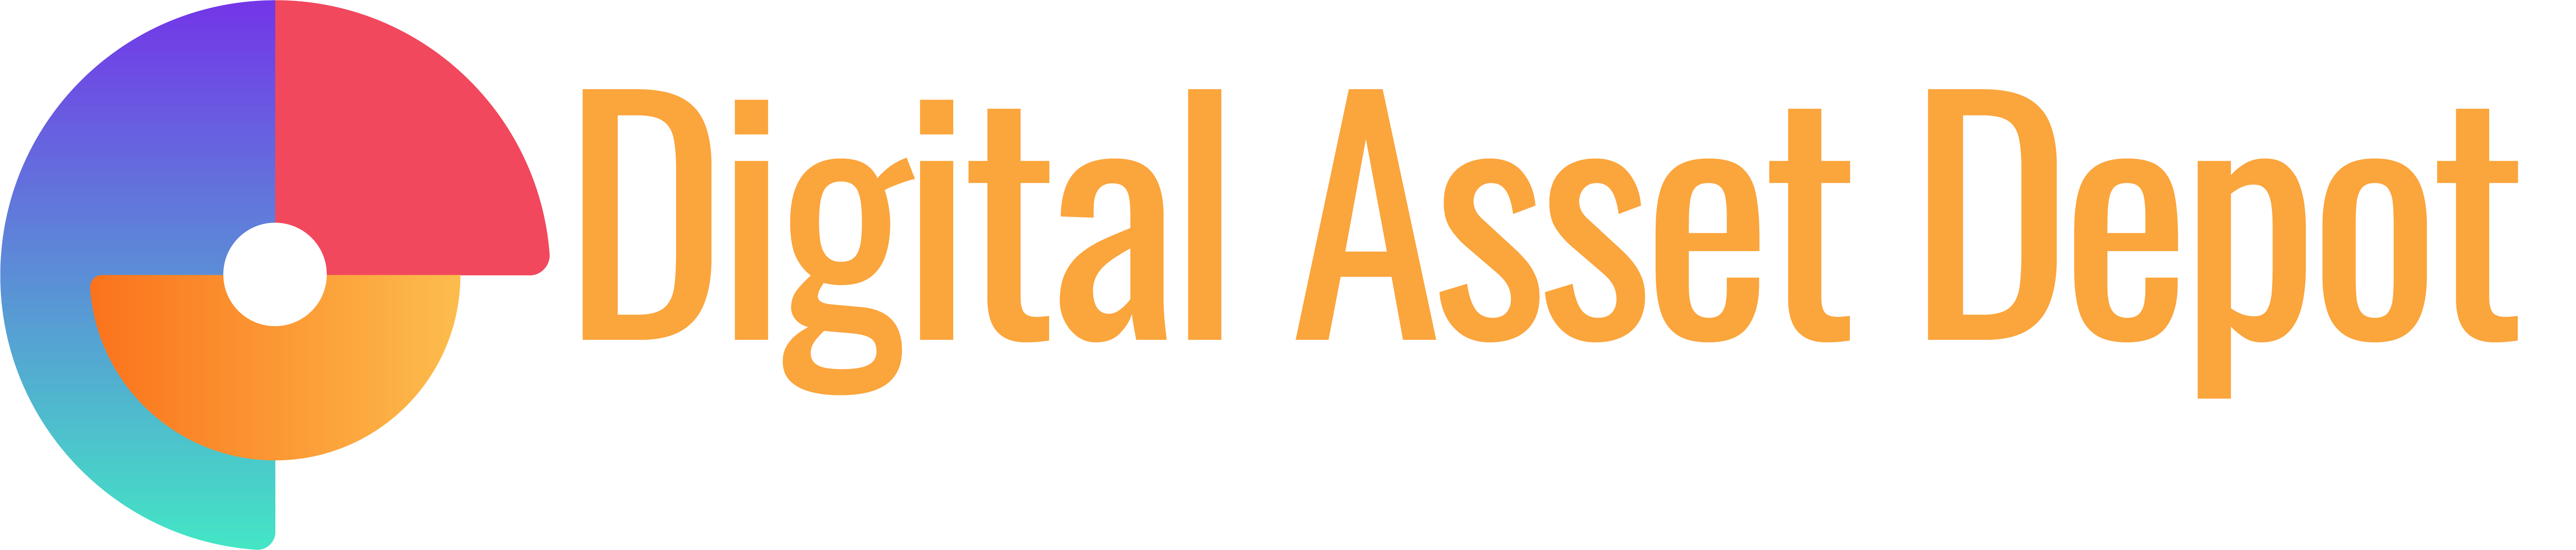 Digital Asset Depot